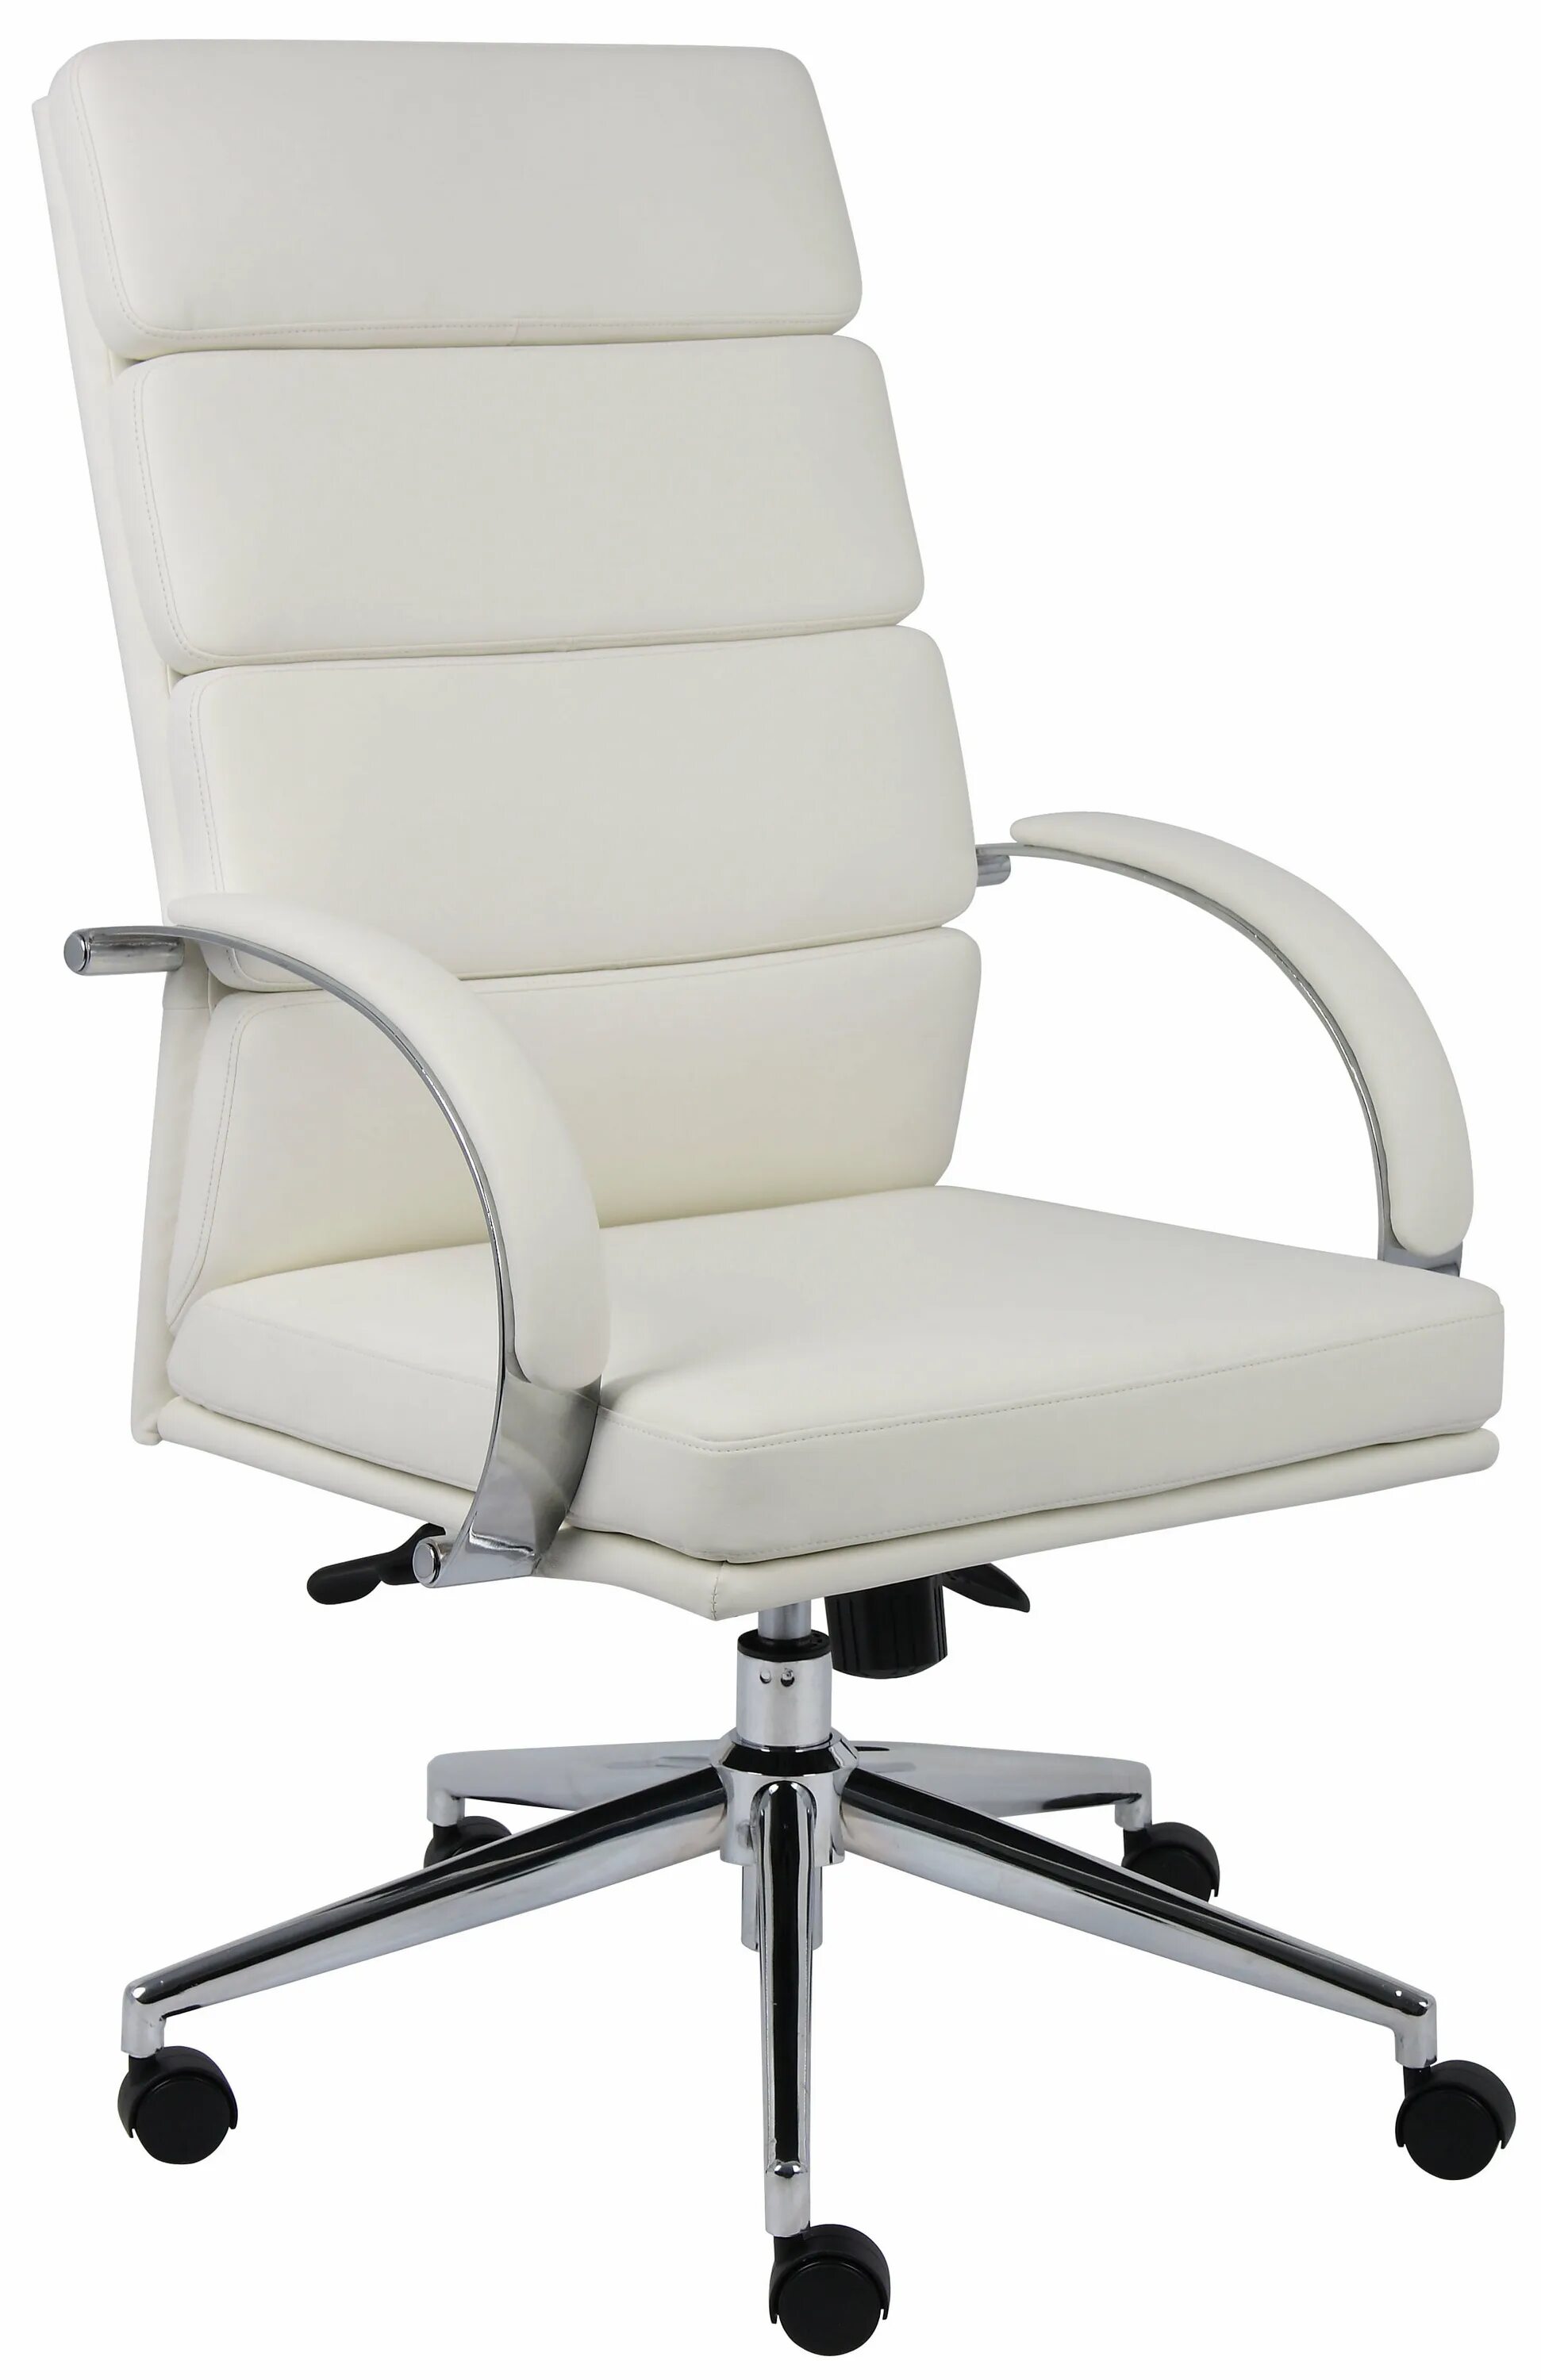 Кресло офисное/Office Chair without Wheels. Кресло Boss 2. Кресло рабочее Boss BT-9767h (кожа). Офисное кресло Дэфо белое. Купим офисные кресла б у